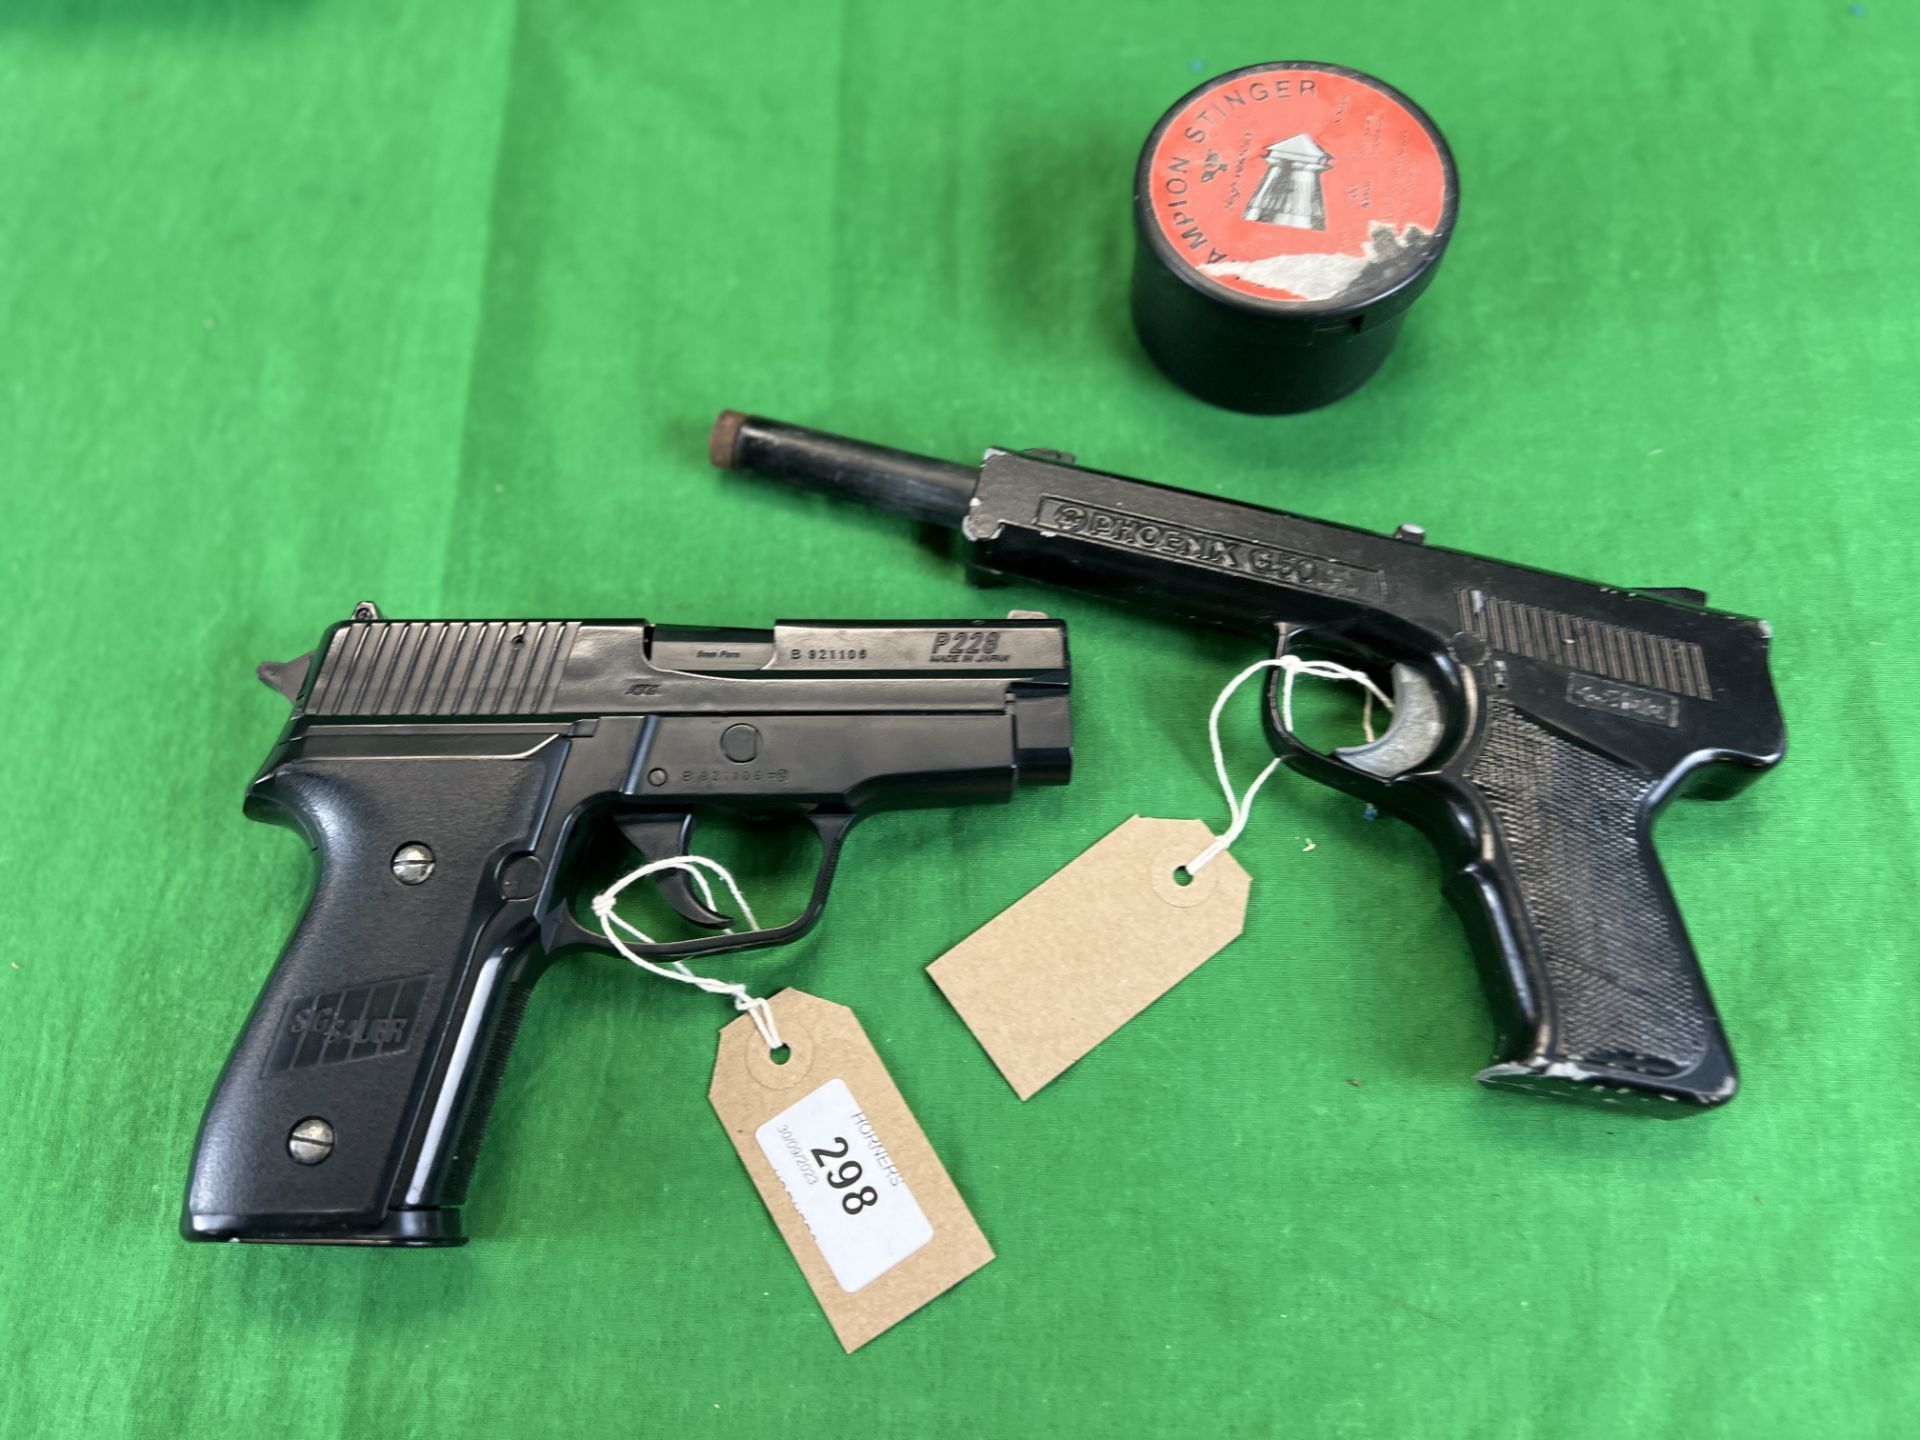 A SIG SAUER P228 BB GUN WITH BB's ALONG WITH PHOENIX G50 .